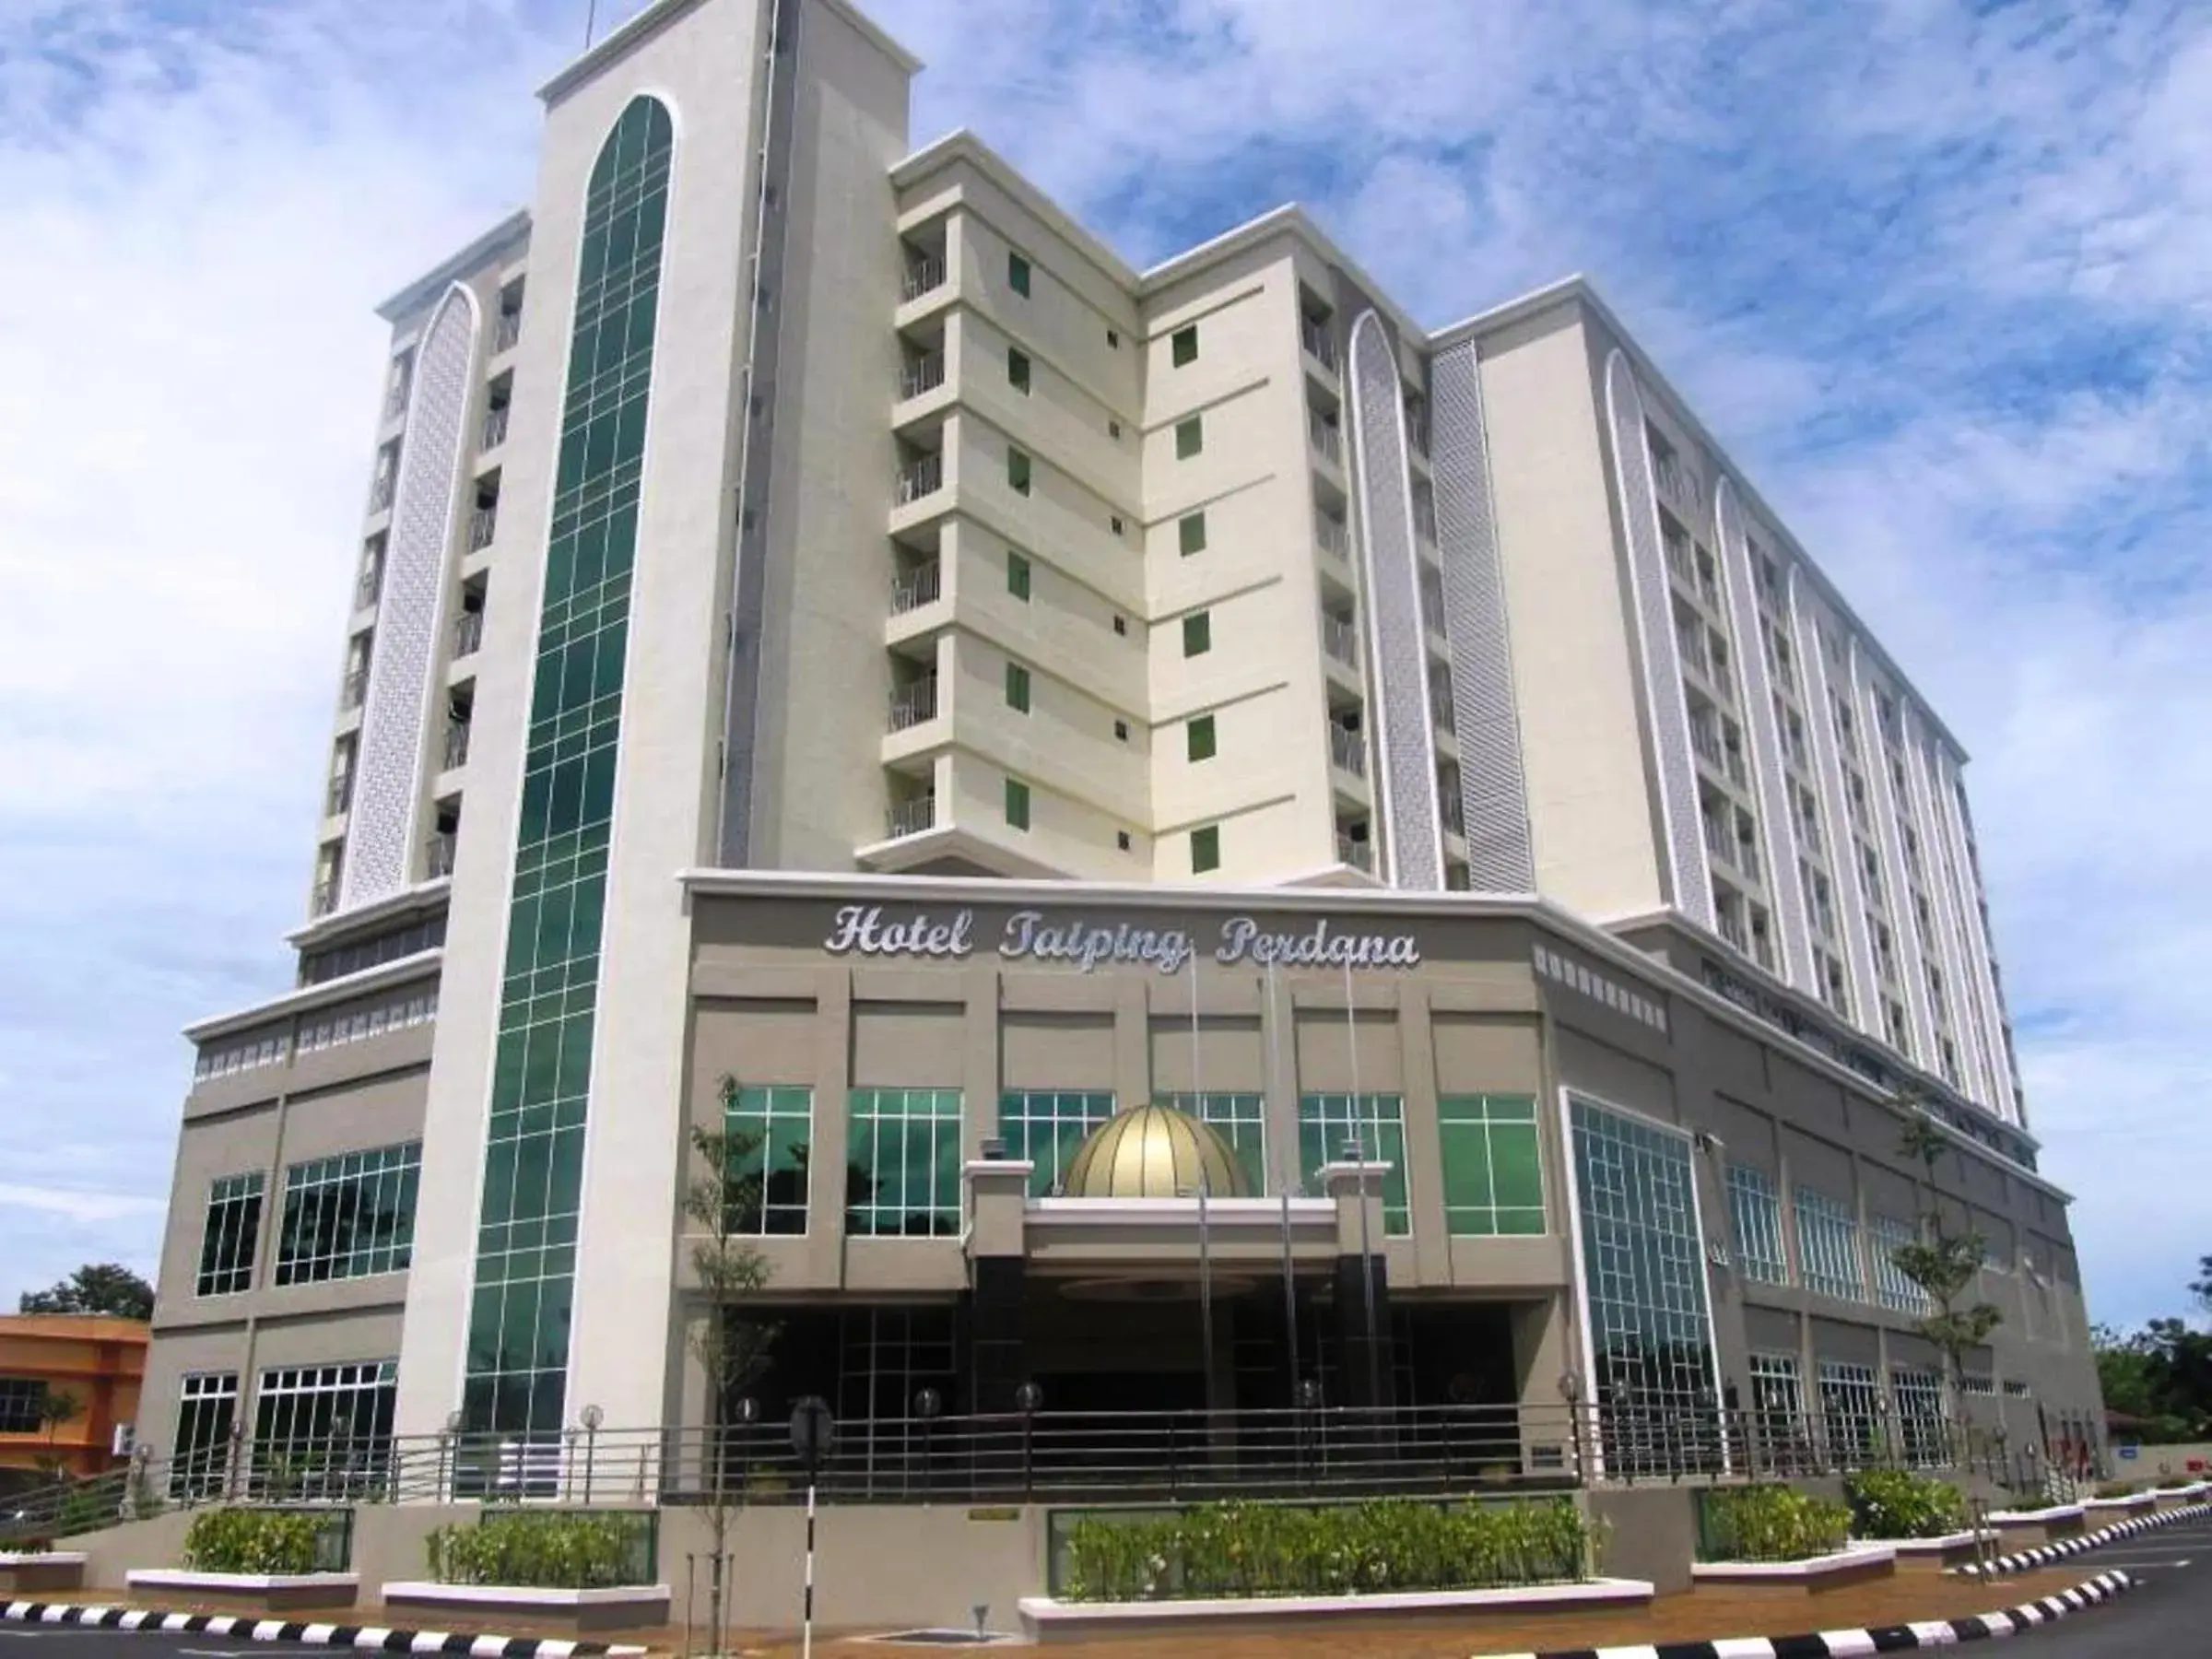 Facade/entrance, Property Building in Hotel Taiping Perdana